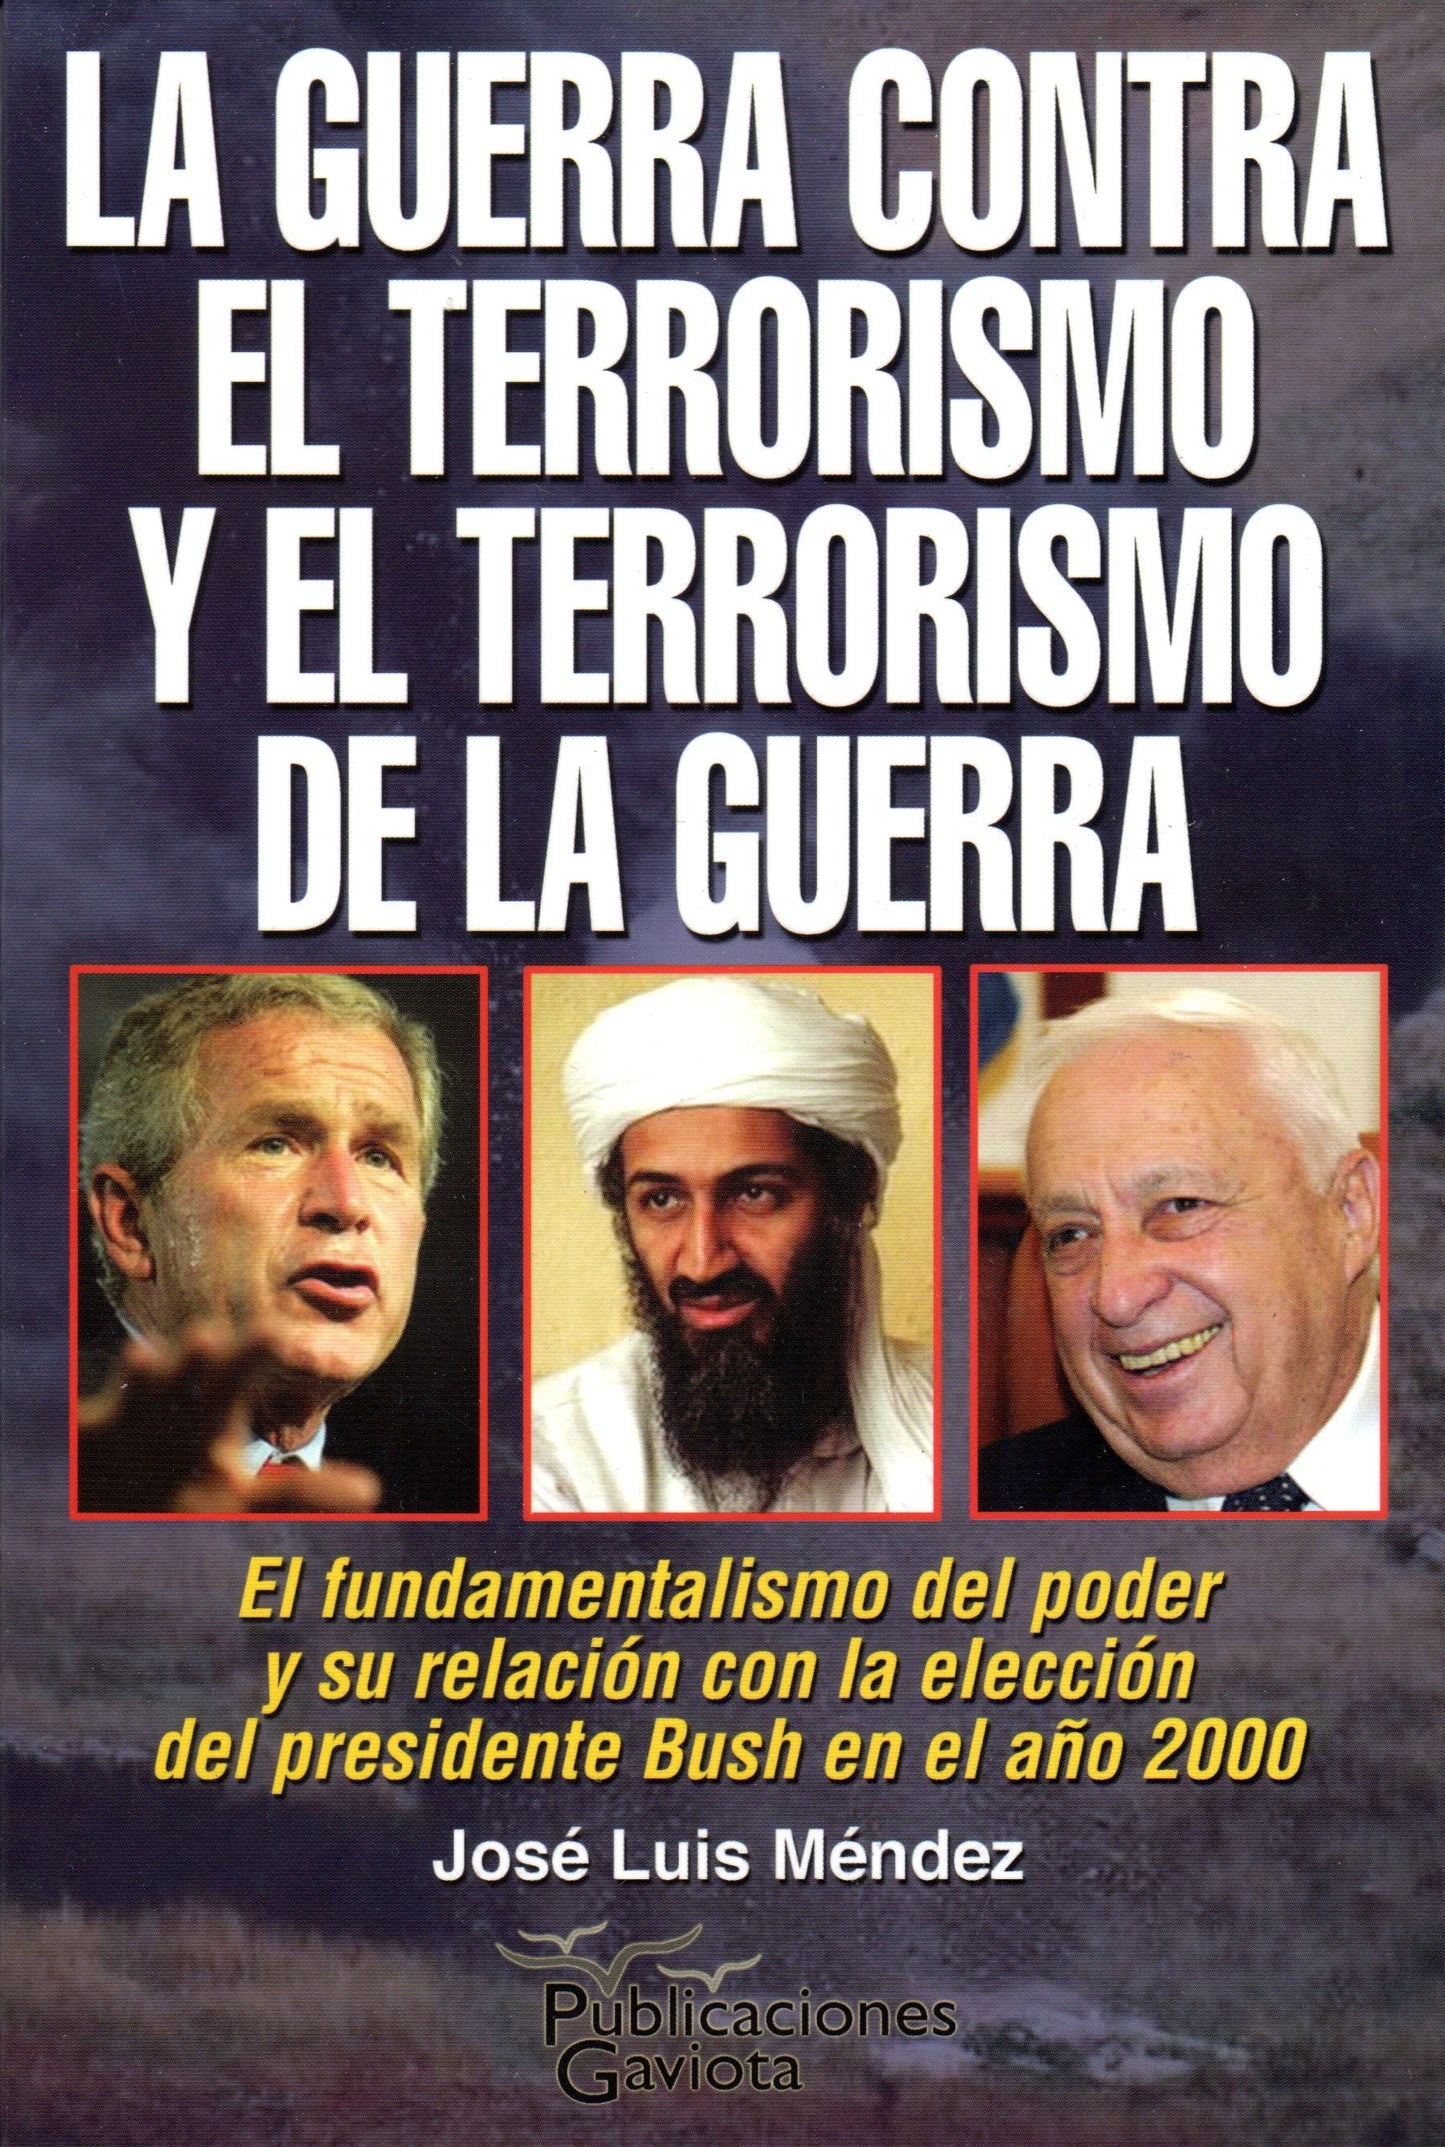 La guerra contra el terrorismo y el terrorismo de la guerra: El fundamentalismo del poder y su relación con la elección del presidente Bush en el año 2000